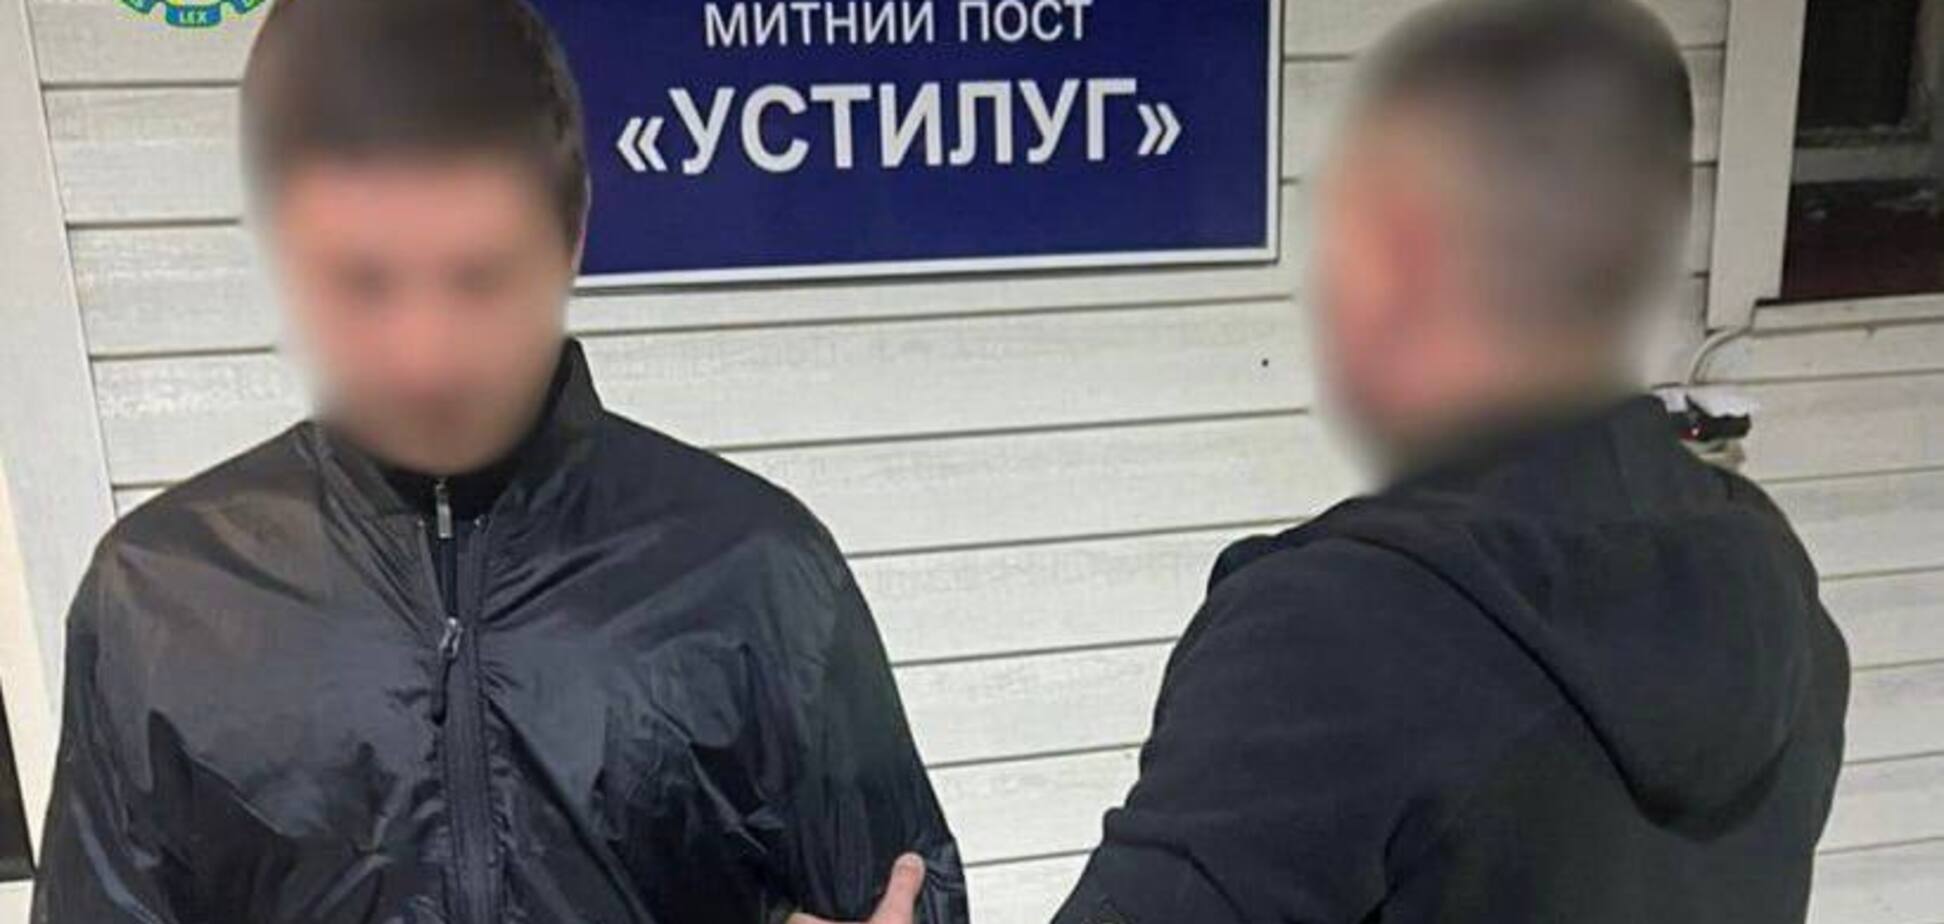 Переправляли уклонистов за границу: в Украину из Болгарии экстрадировали руководителя преступной группировки. Фото